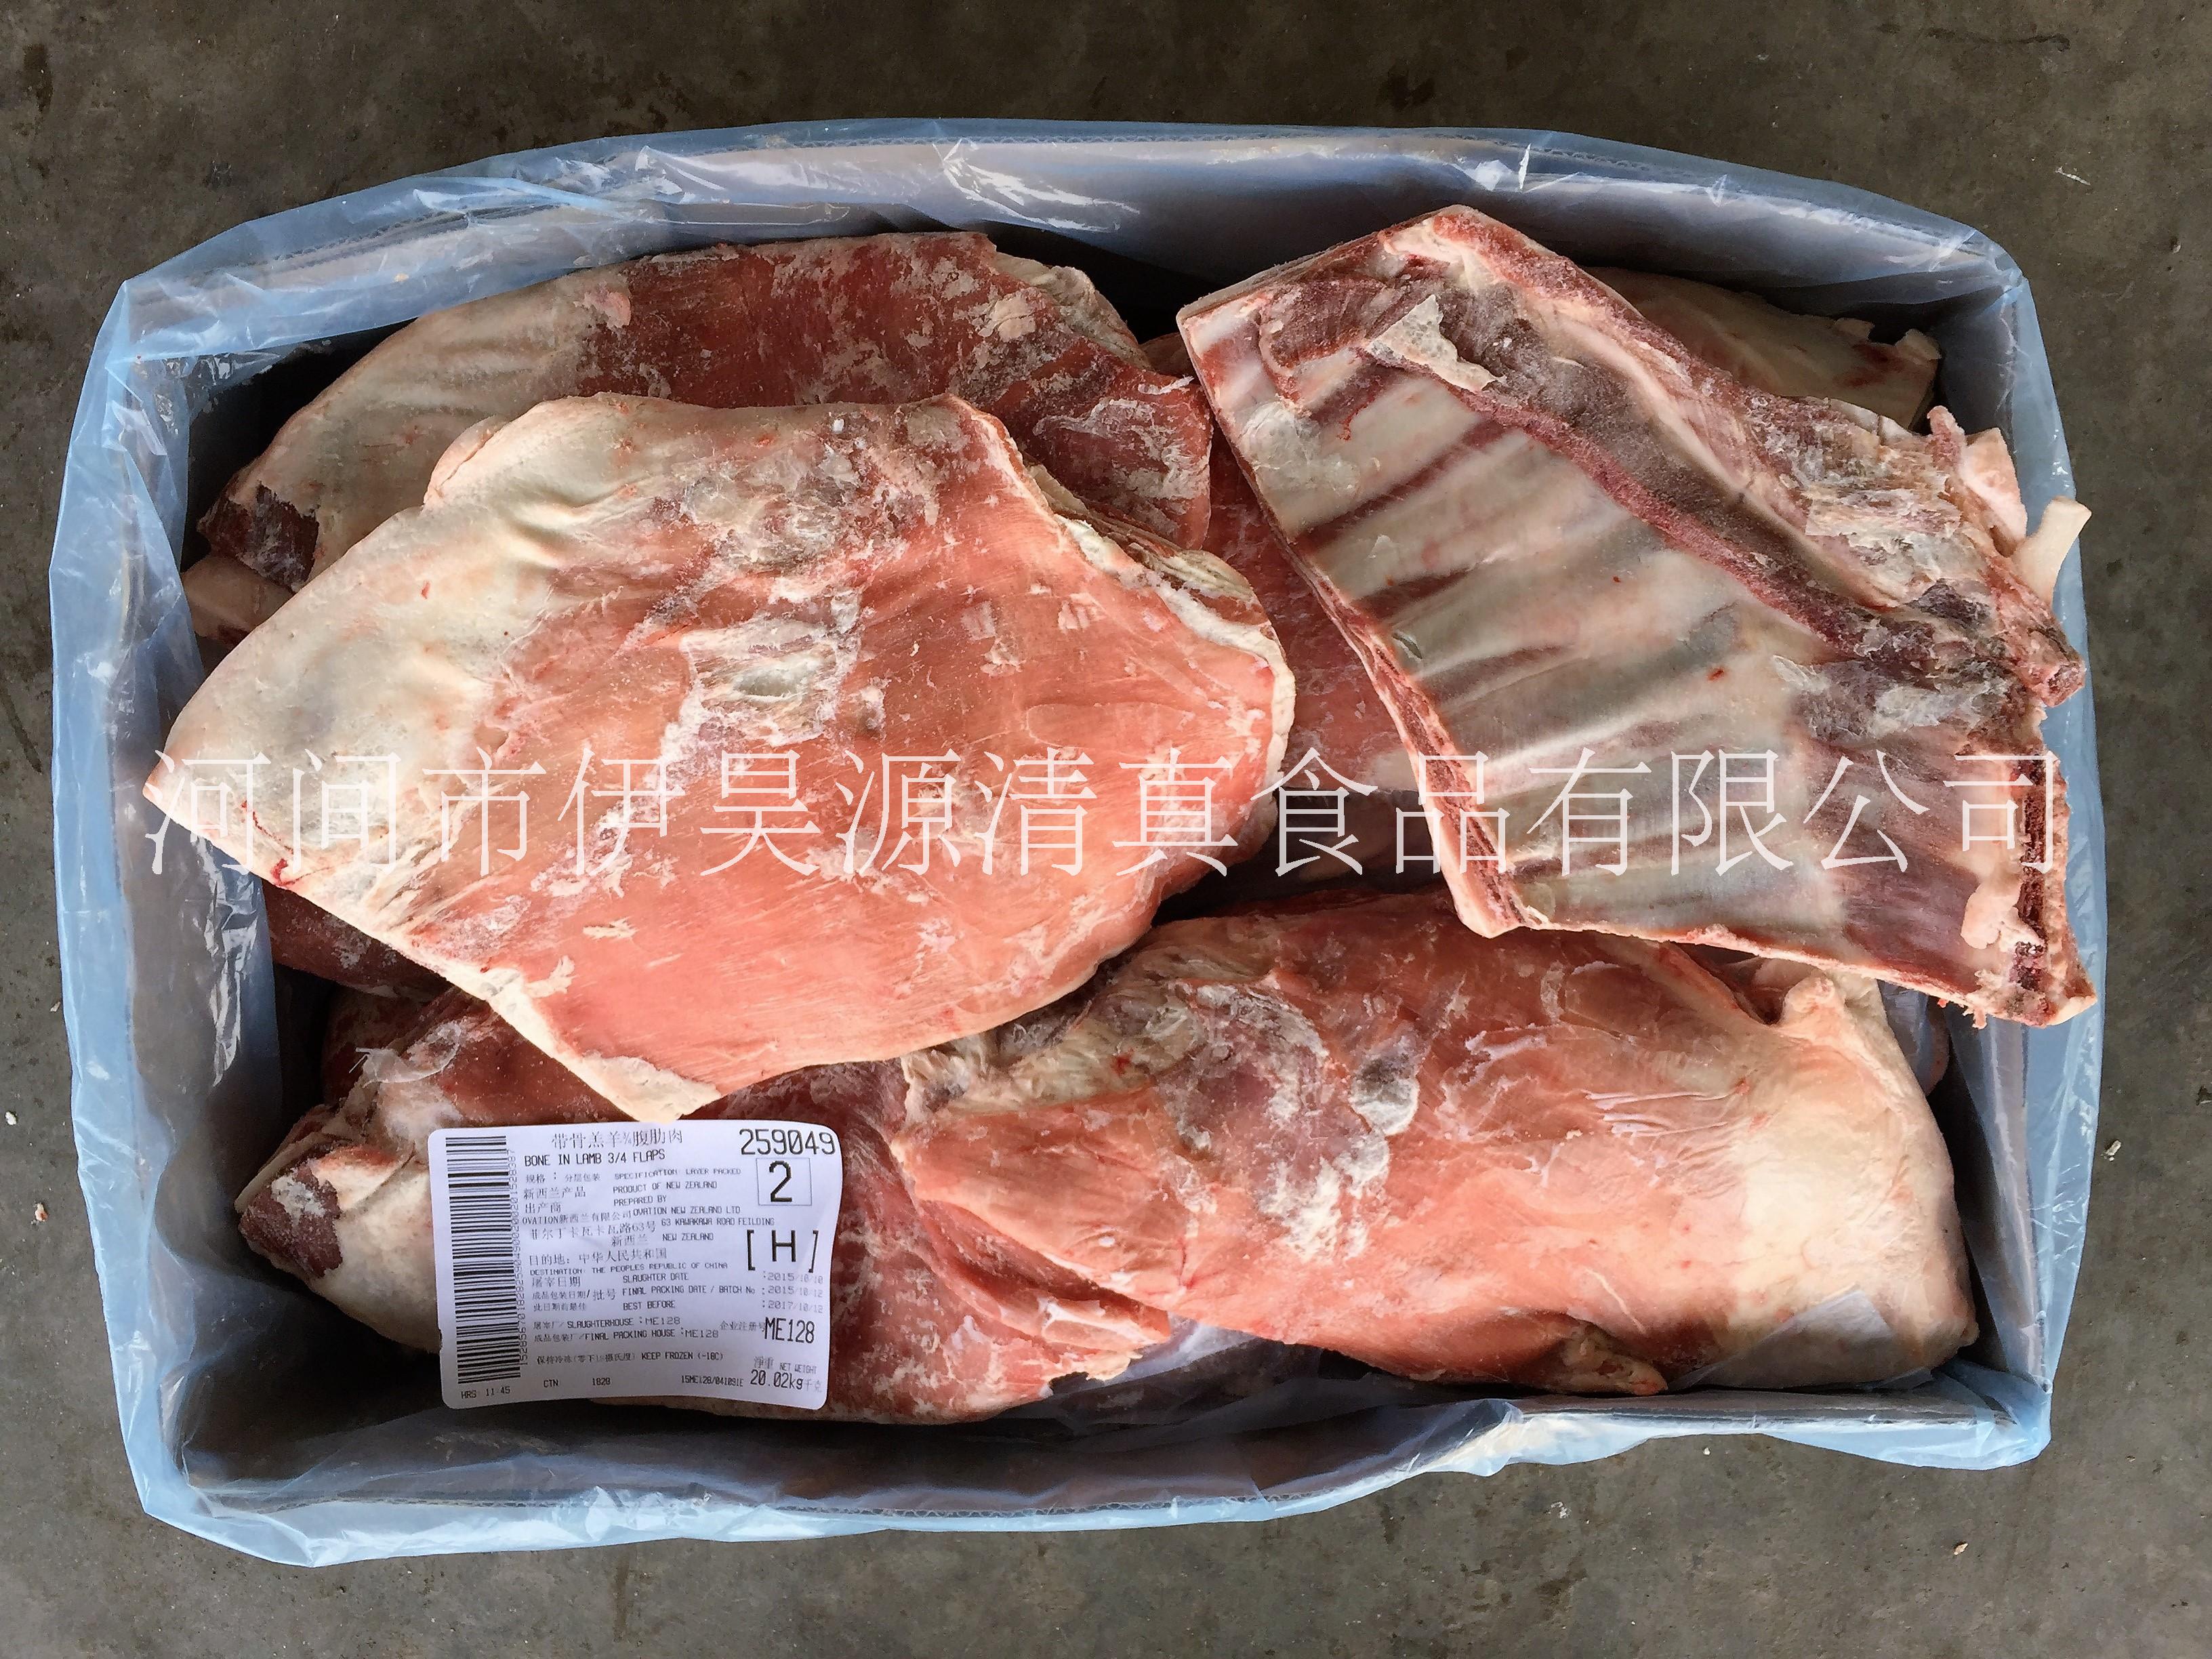 新西兰128厂带骨羔羊纯排 259049 带骨羔羊¾腹肋肉